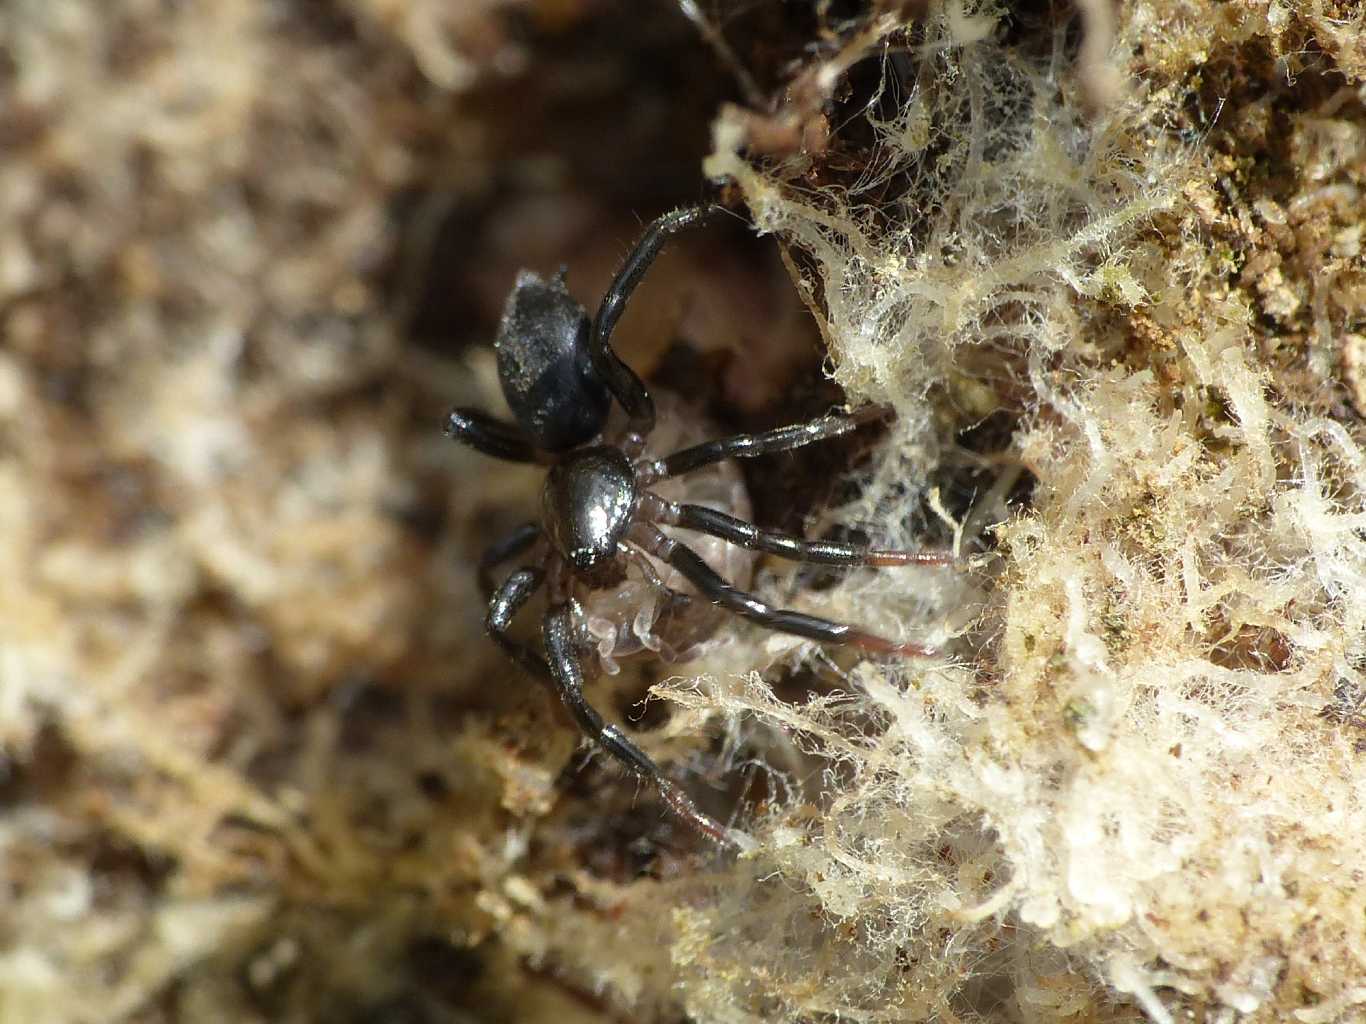 Drassyllus sp. con preda (Isopoda) - Montecompatri (RM)